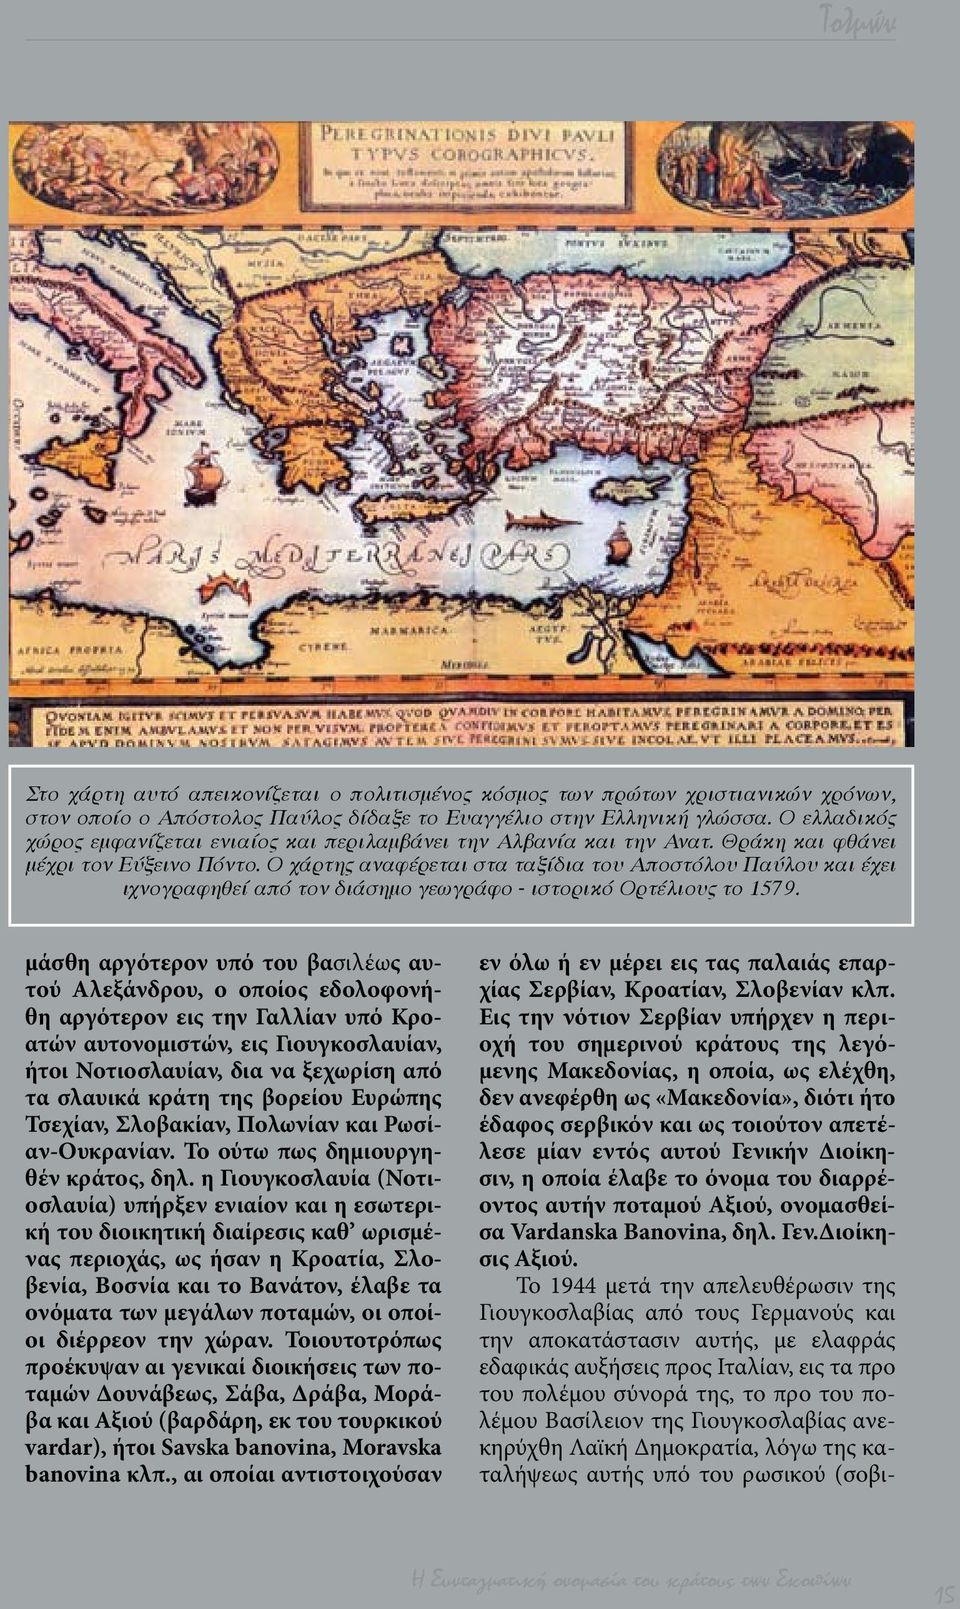 Ο χάρτης αναφέρεται στα ταξίδια του Αποστόλου Παύλου και έχει ιχνογραφηθεί από τον διάσημο γεωγράφο - ιστορικό Ορτέλιους το 1579.